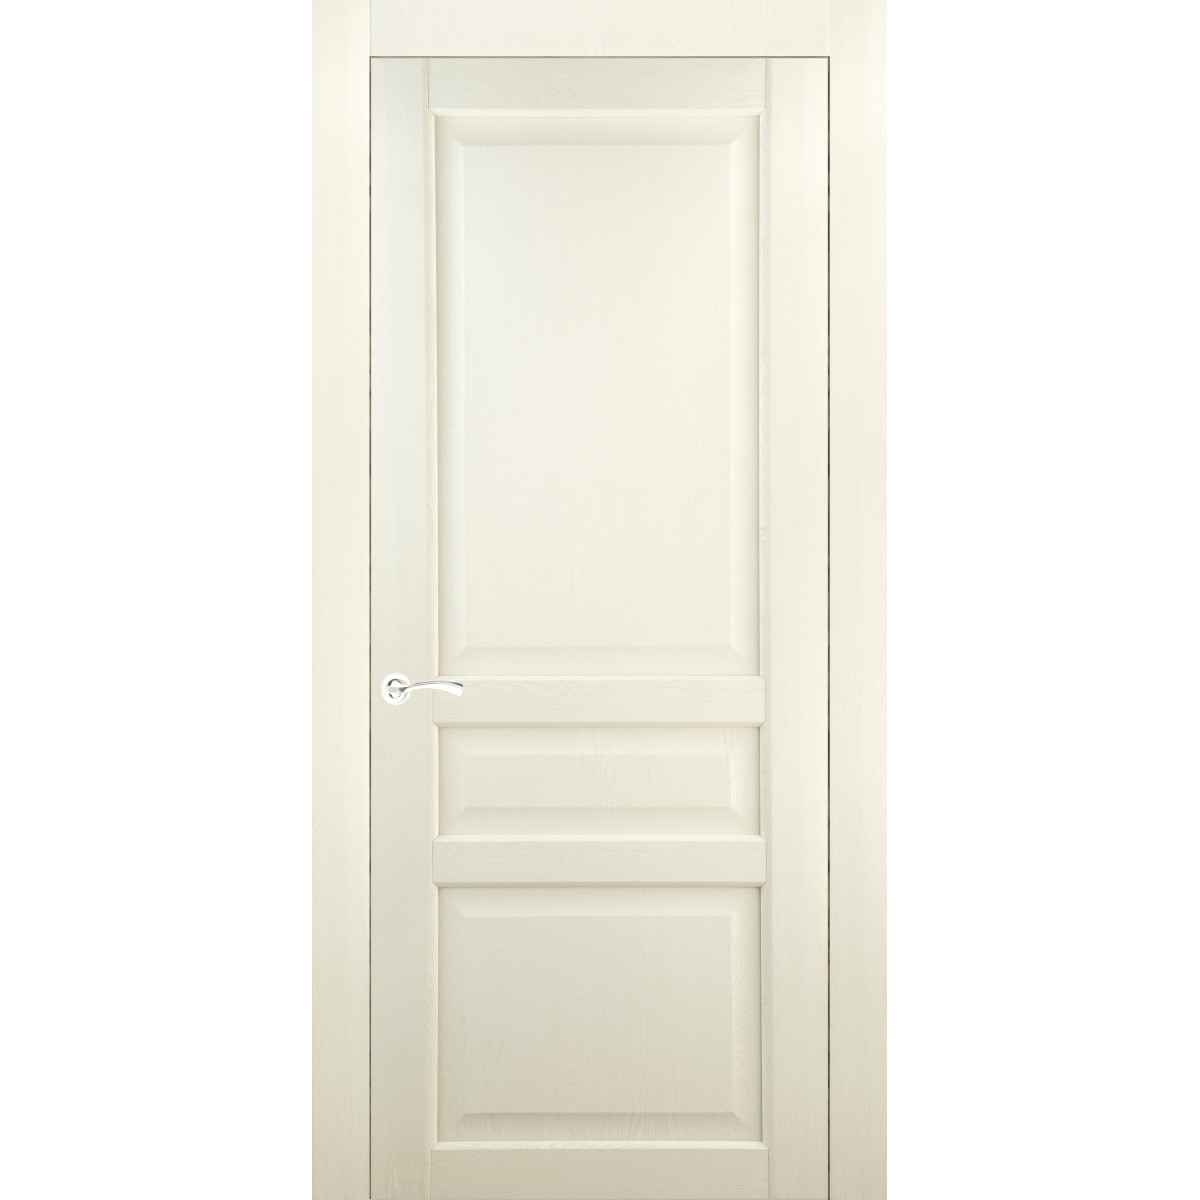 Дверь межкомнатная глухая Artens Мария 70x200 см, ПВХ, цвет айвори, с замком в комплекте